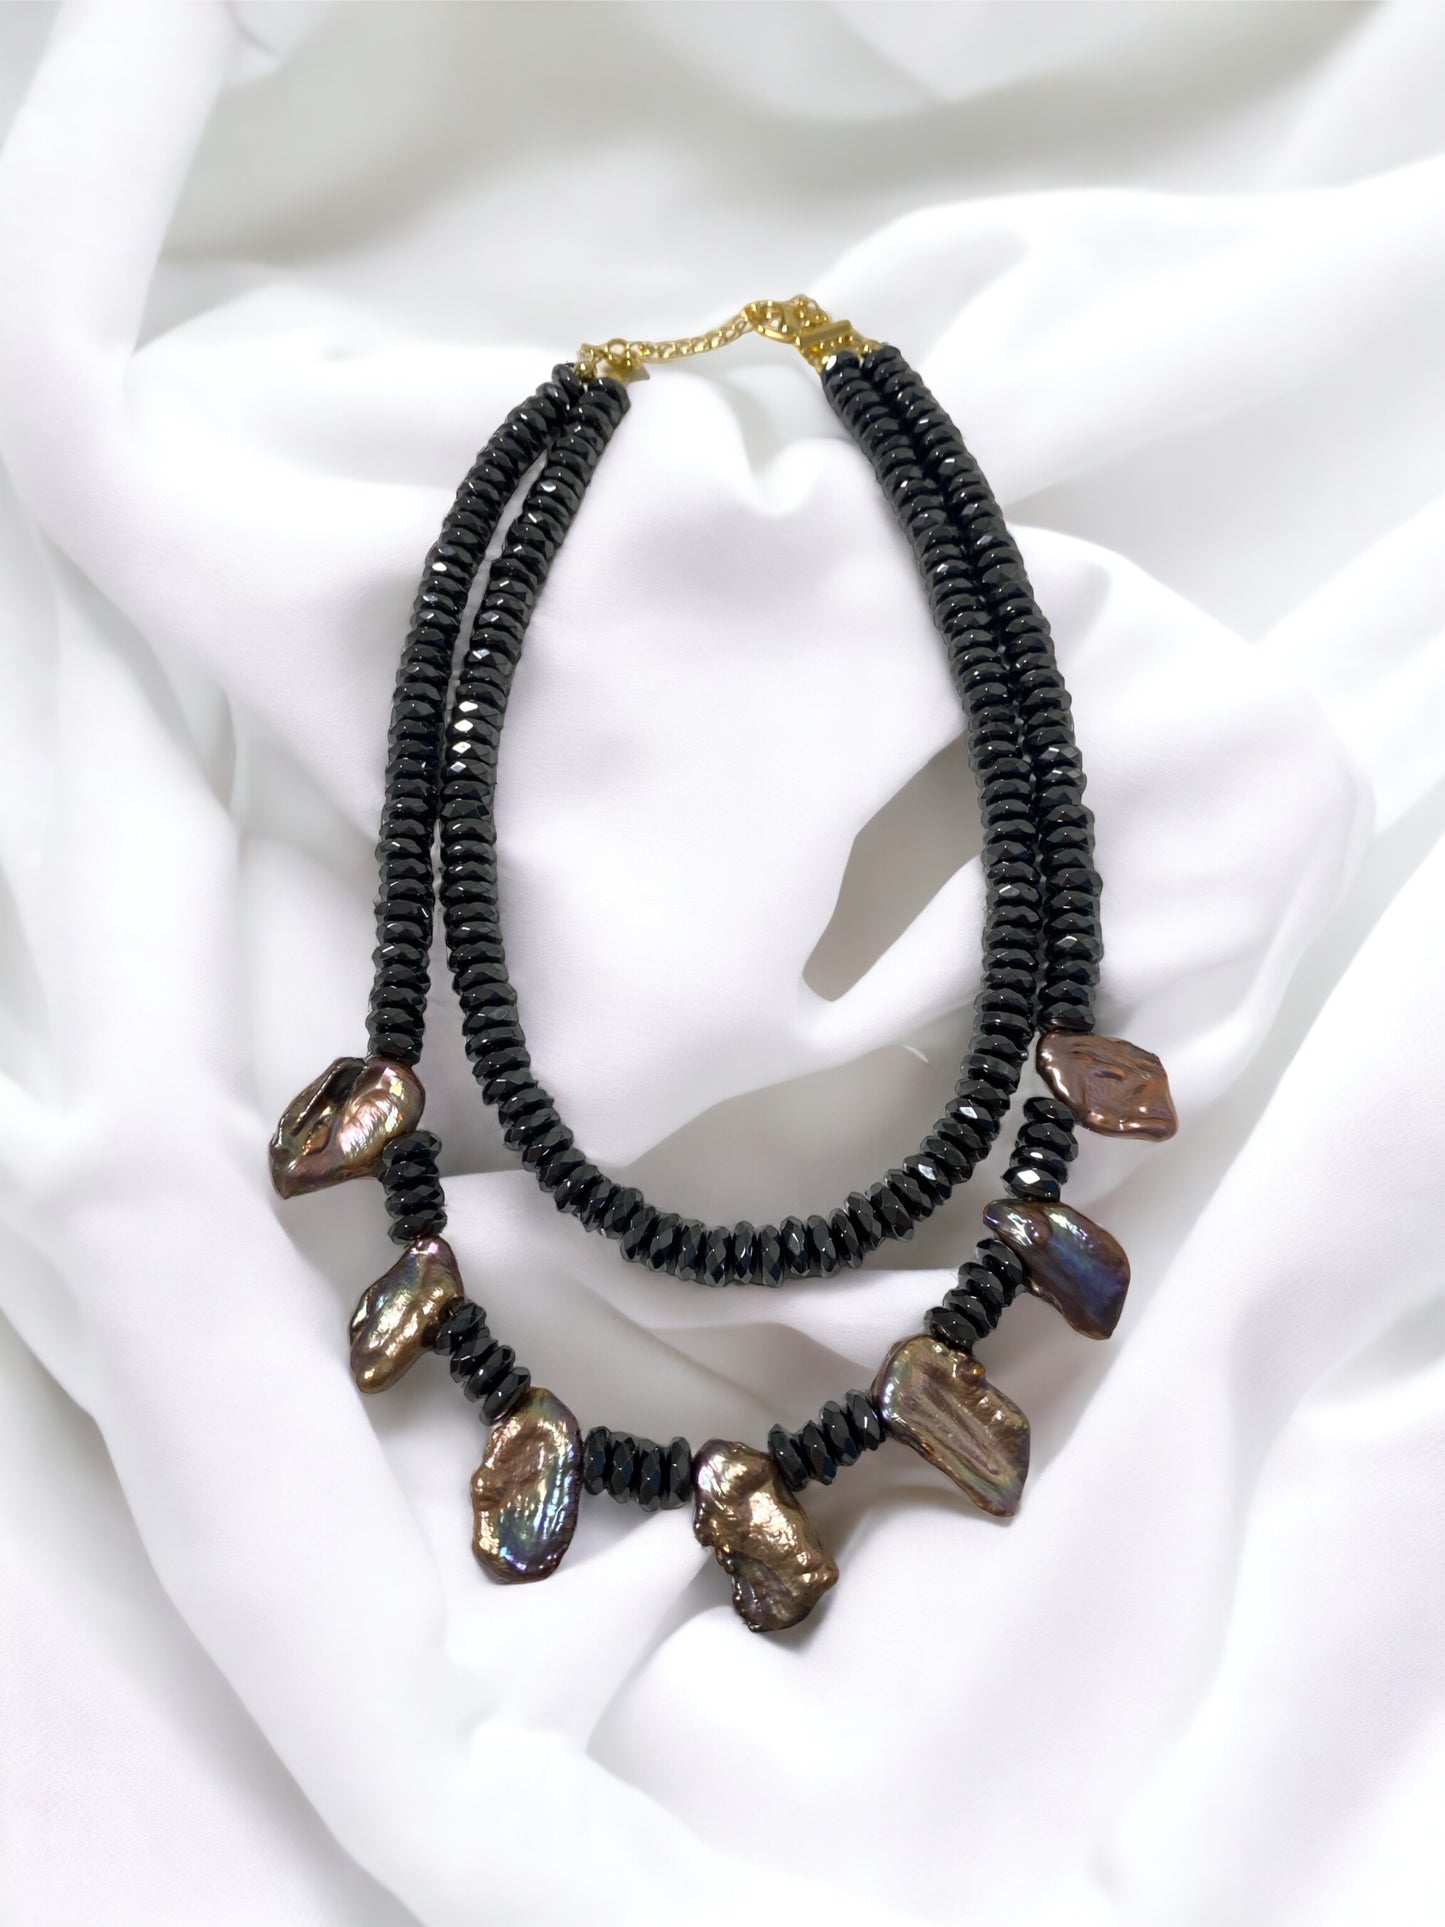 Massive Halskette 2 Reihen schwarze Hämatit Perlen und natürliche Süsswasserperlen in schwarz/blau/violett Schimmer